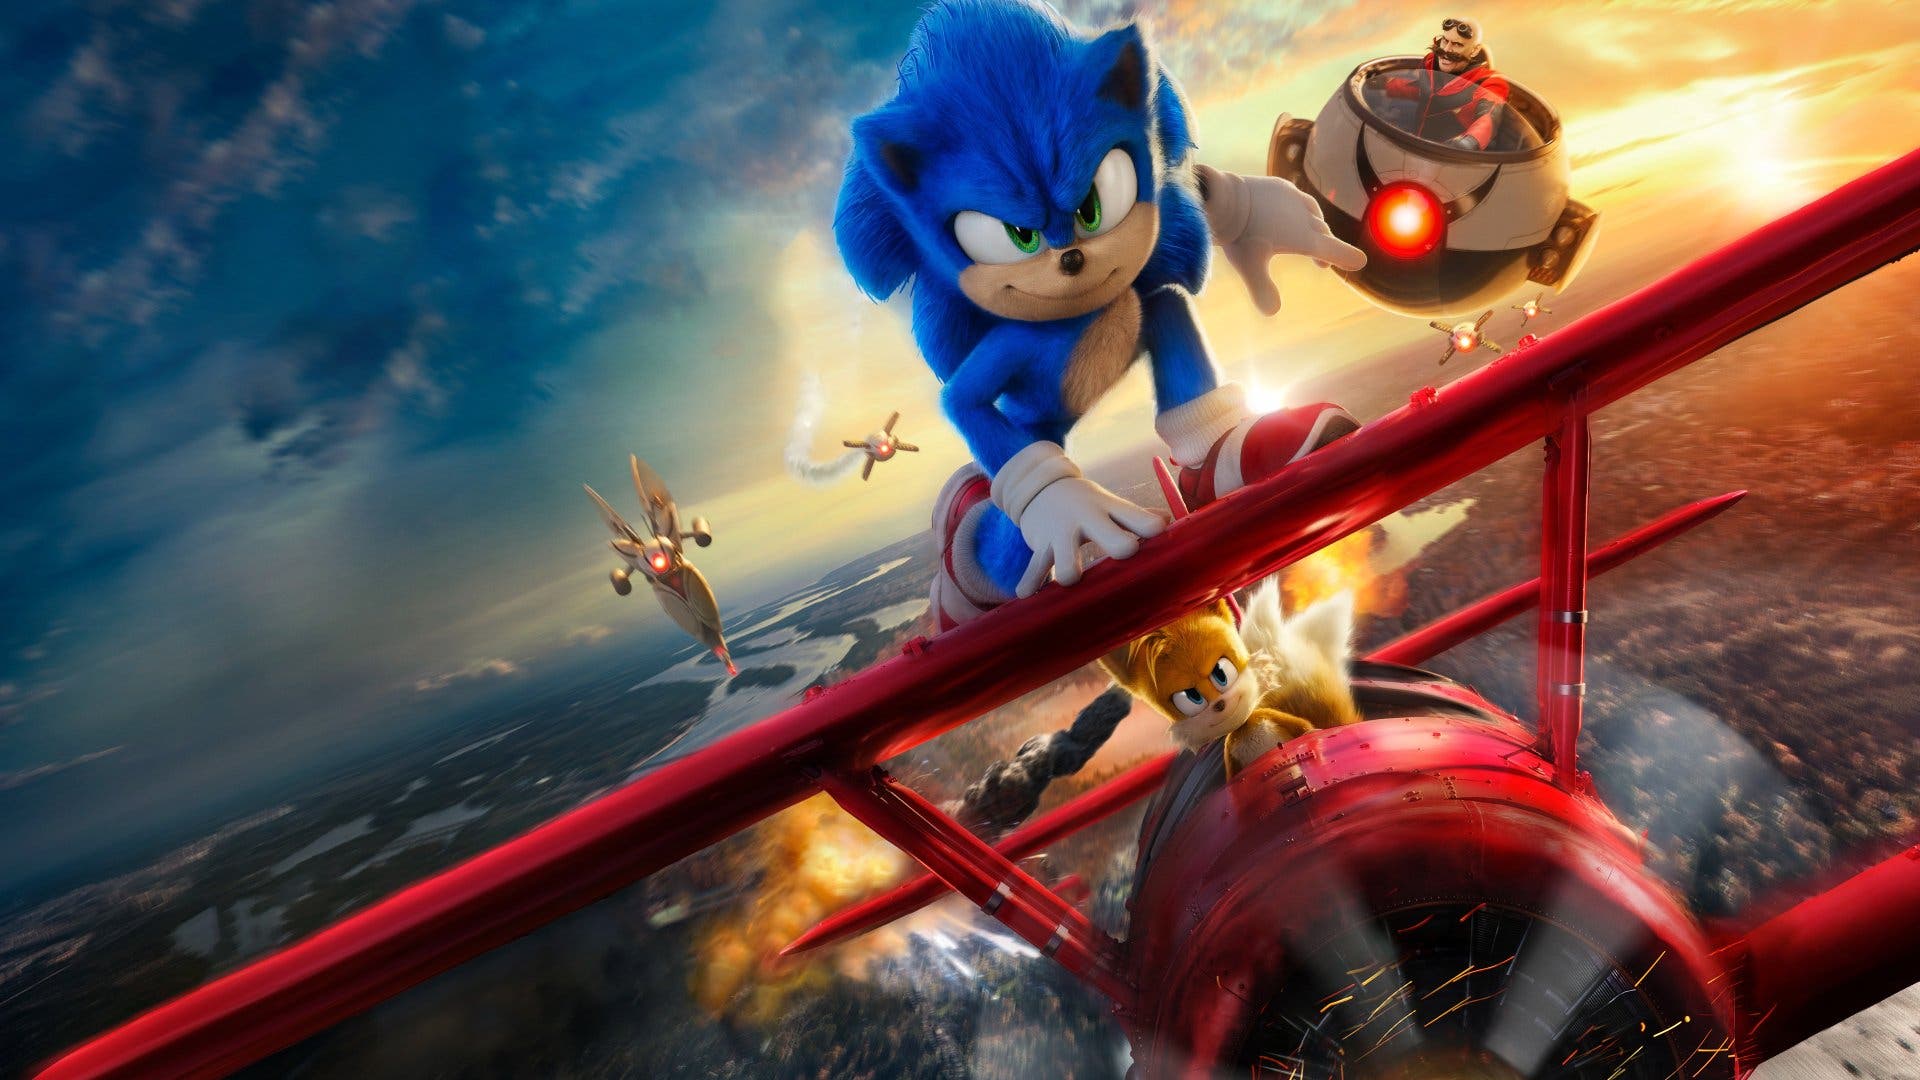 Sonic the Hedgehog 2 sigue arrasando: ha recaudado 288 millones de dólares a nivel mundial